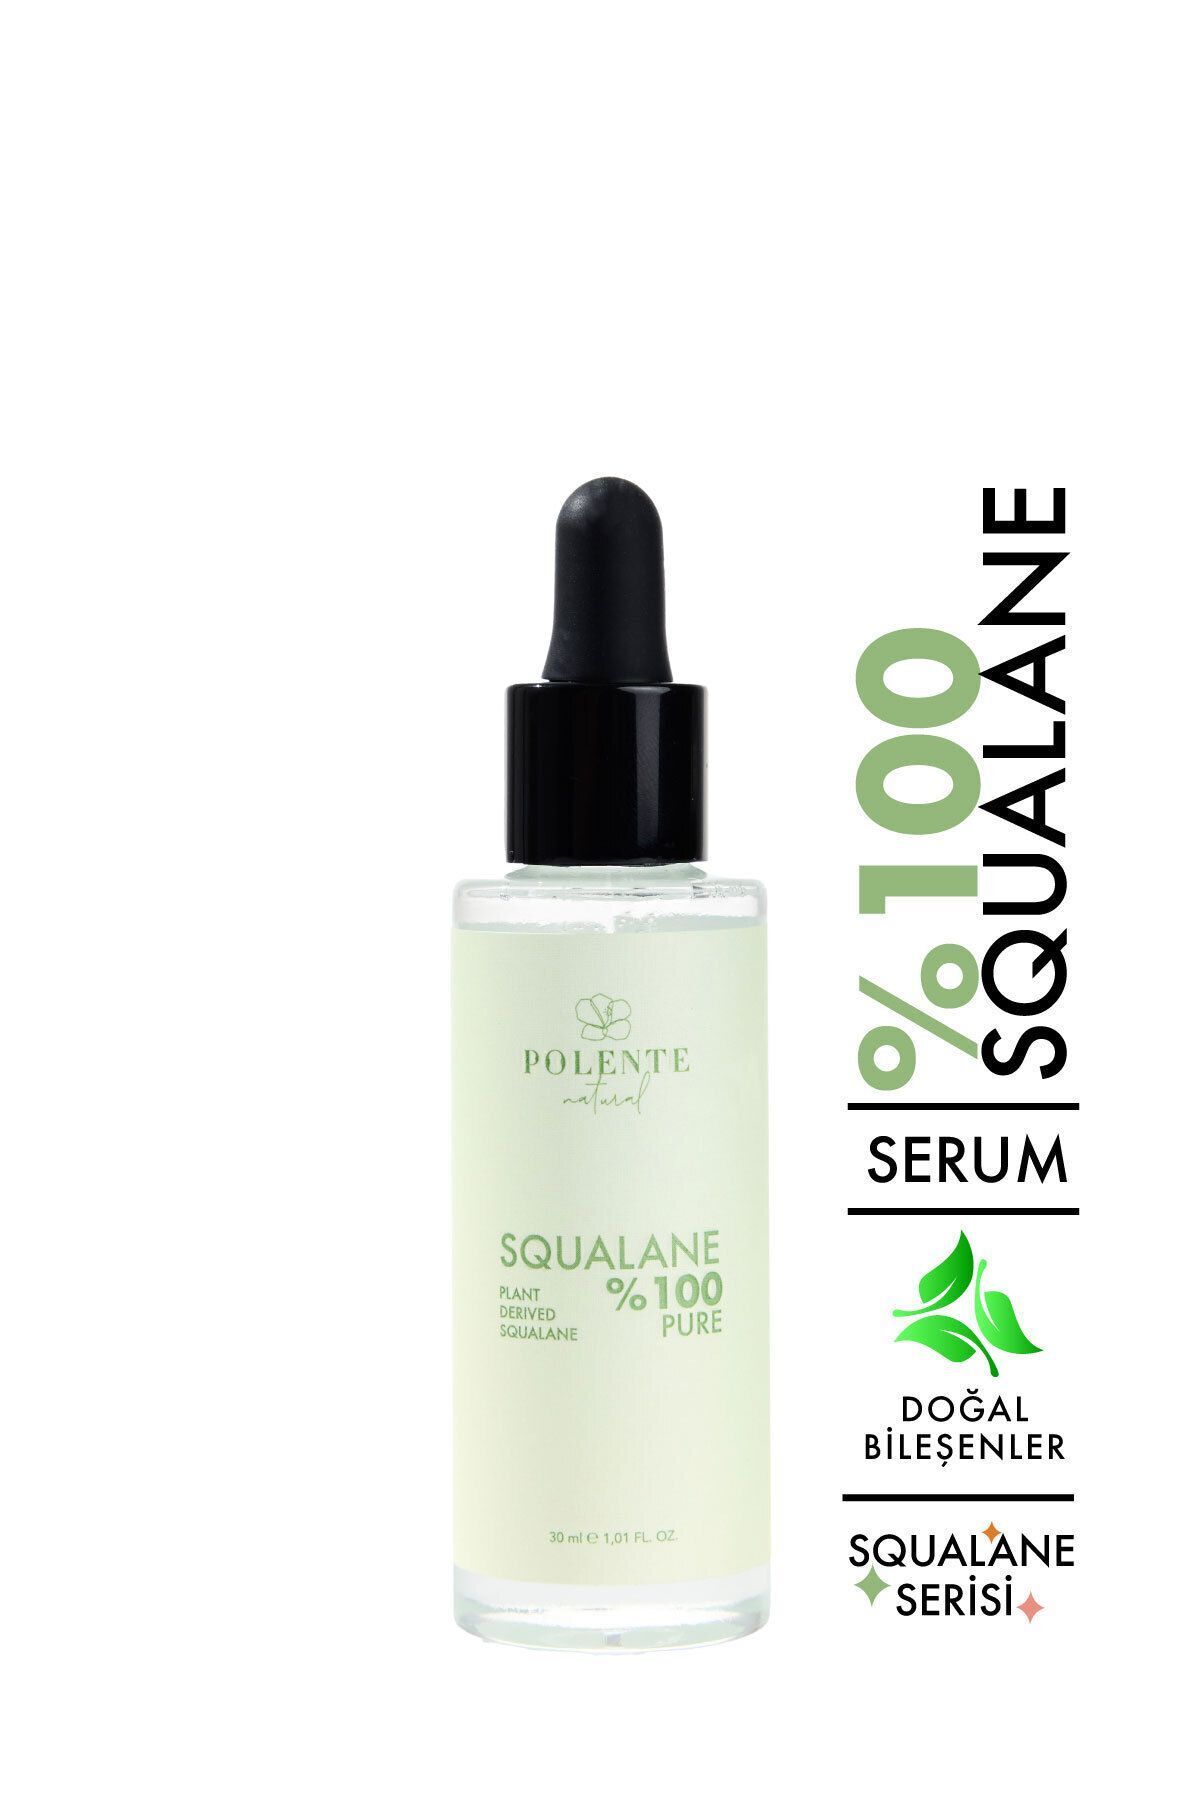 Polente Natural %100 Pure Squalane - Bitkisel Kaynaklı %100 Saf Skualen (30 ML)